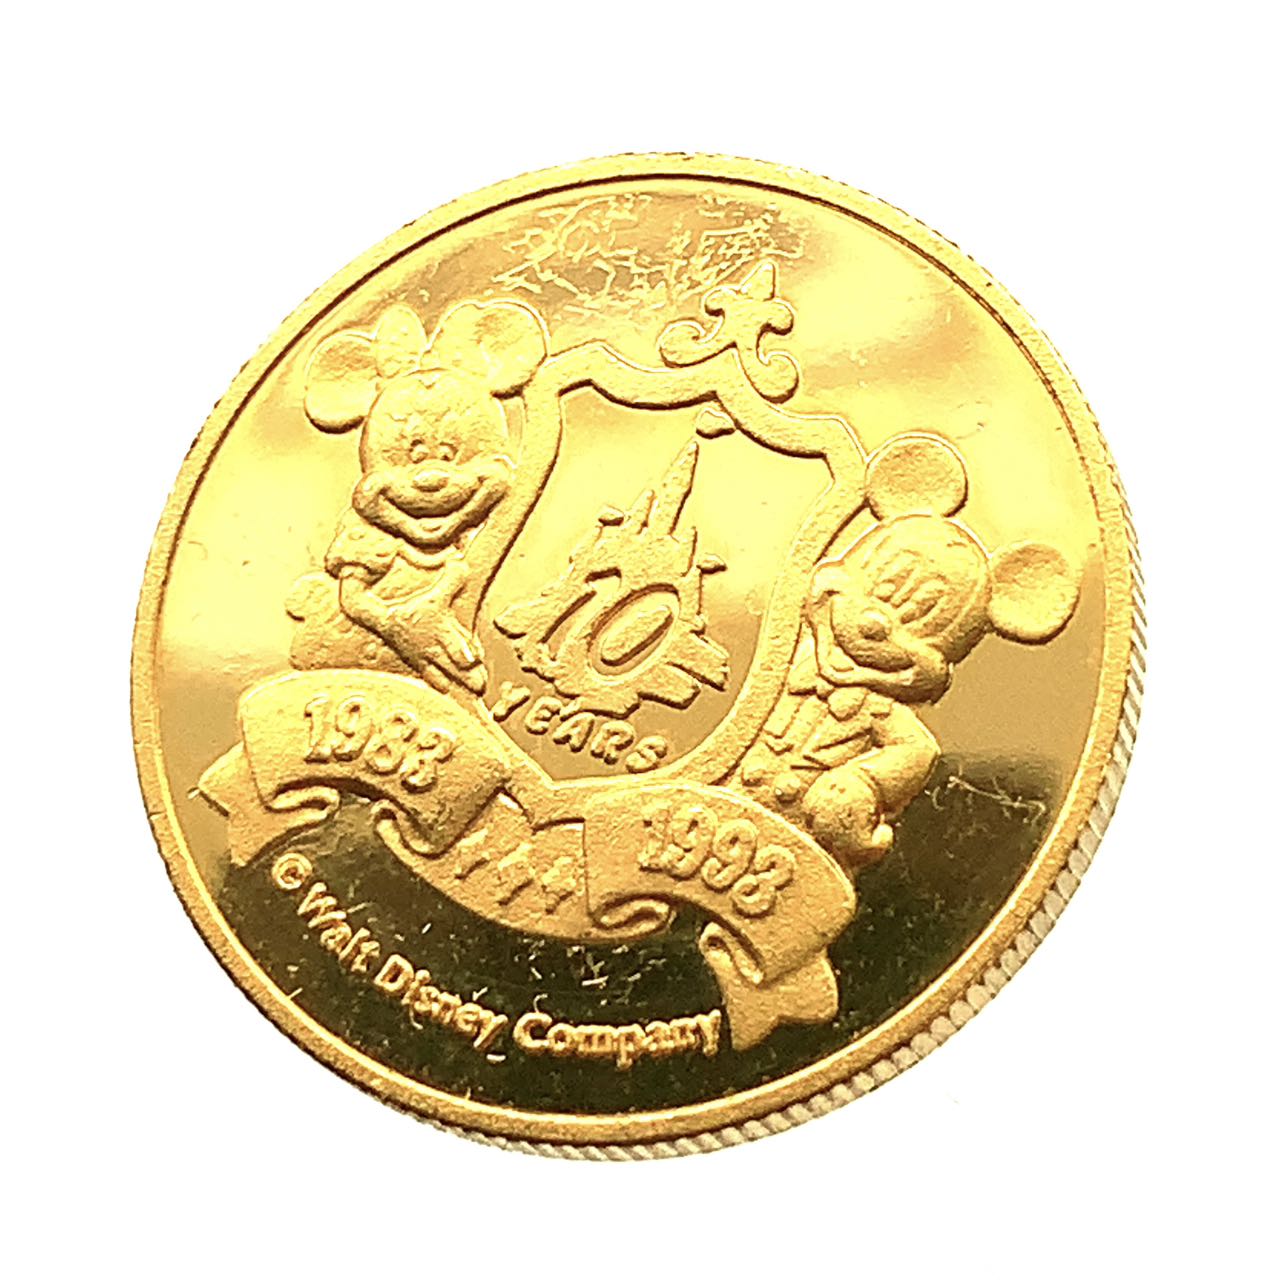 ディズニー金貨 ミッキー 1993年 24金 純金 7.7g コイン イエローゴールド コレクション Gold